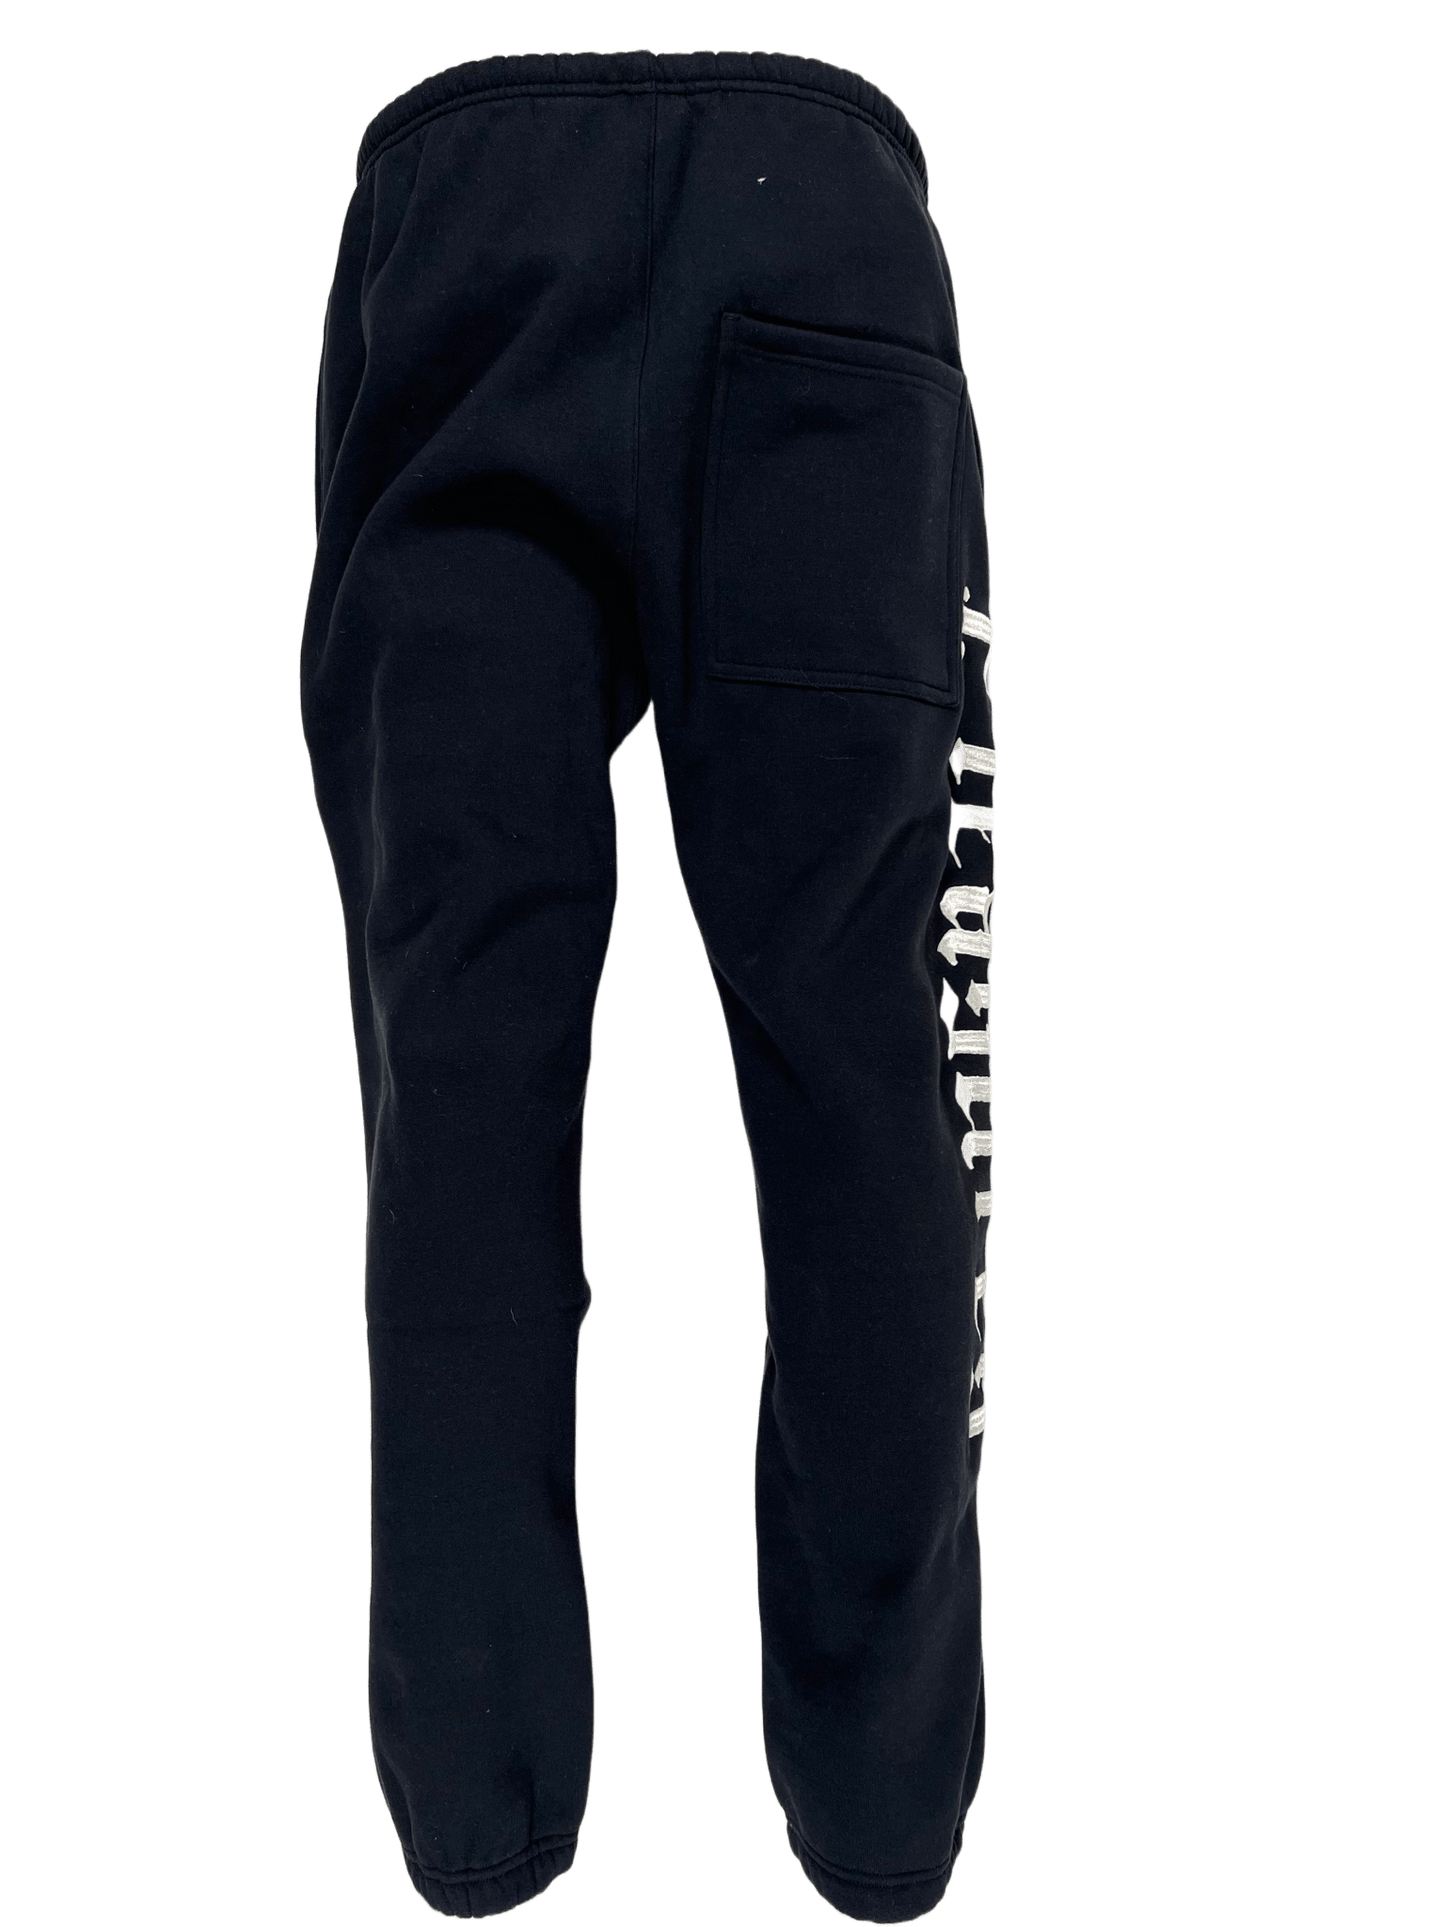 A black cotton fleece Pleasures Burnout Sweatpants with a white logo print on them.